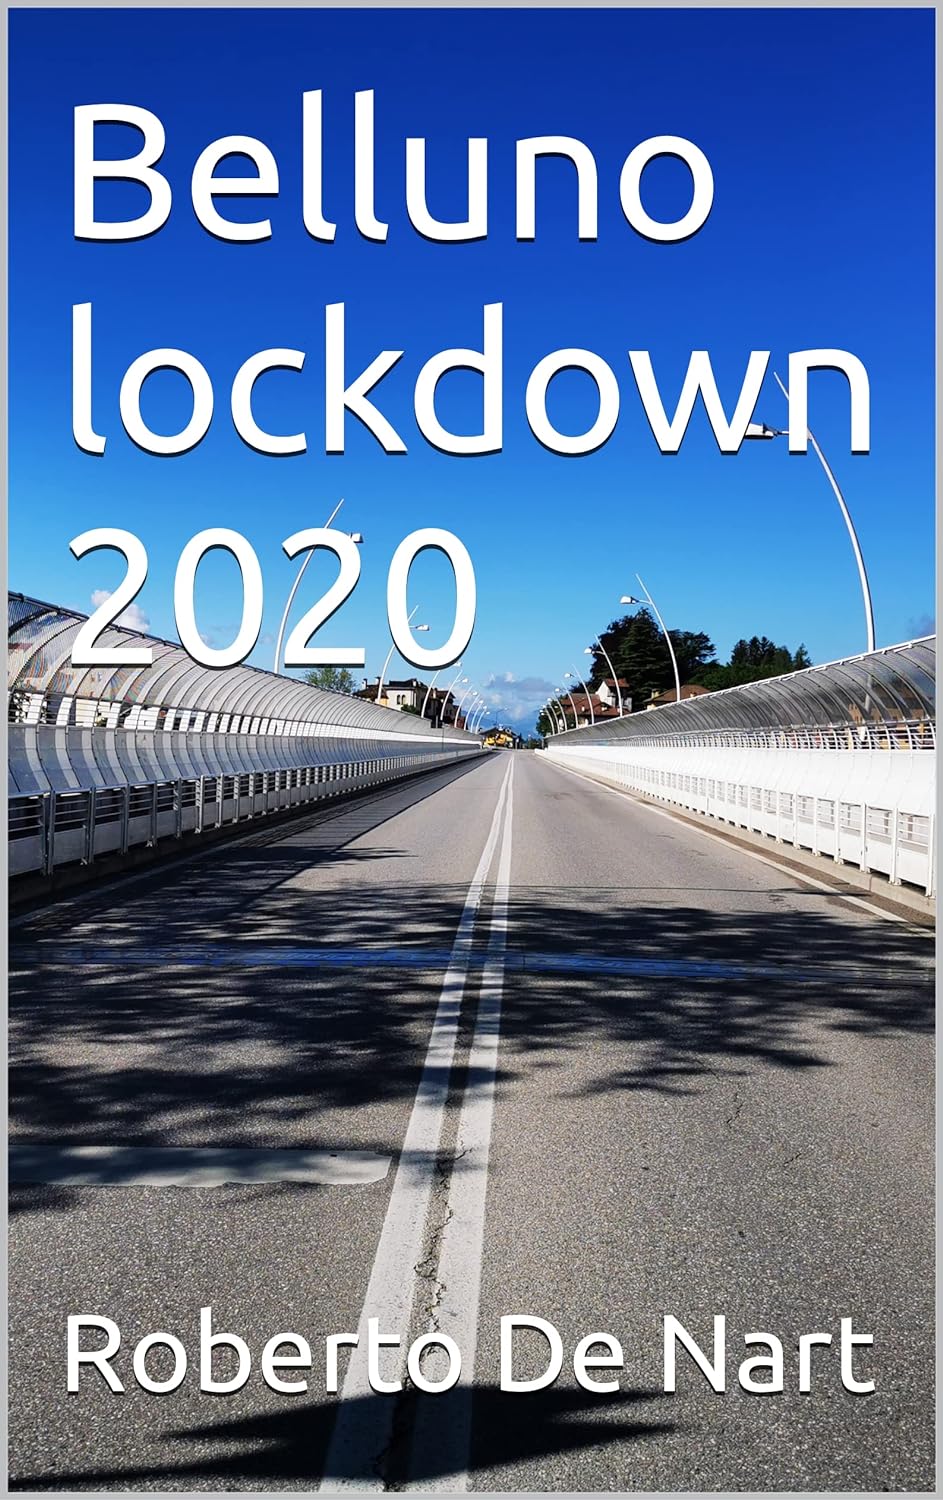 Belluno lockdown 2020: Immagini di una città deserta